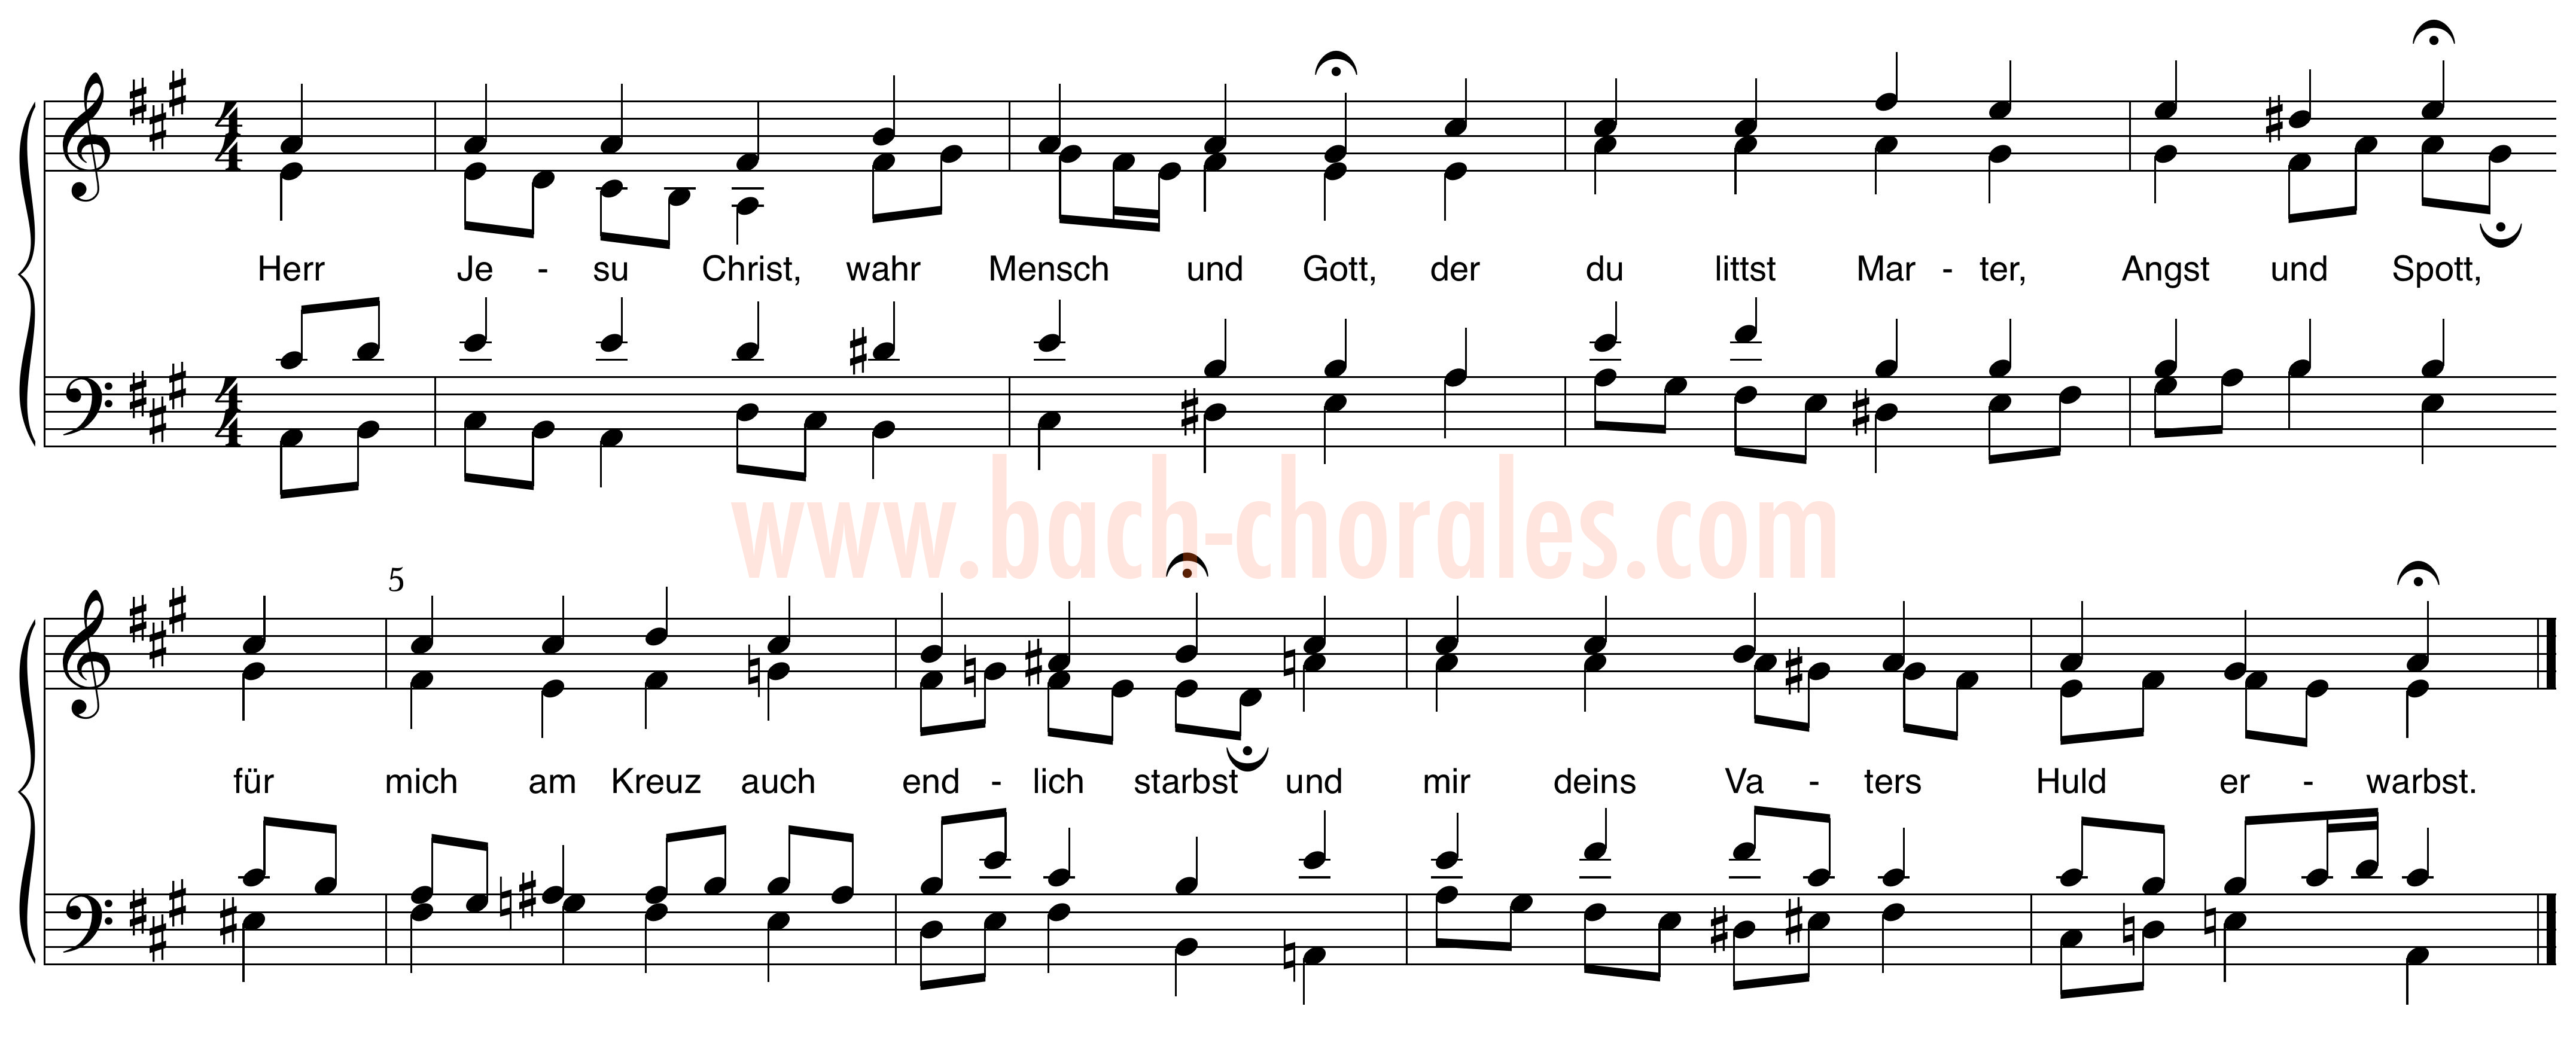 notenbeeld BWV 336 op https://www.bach-chorales.com/